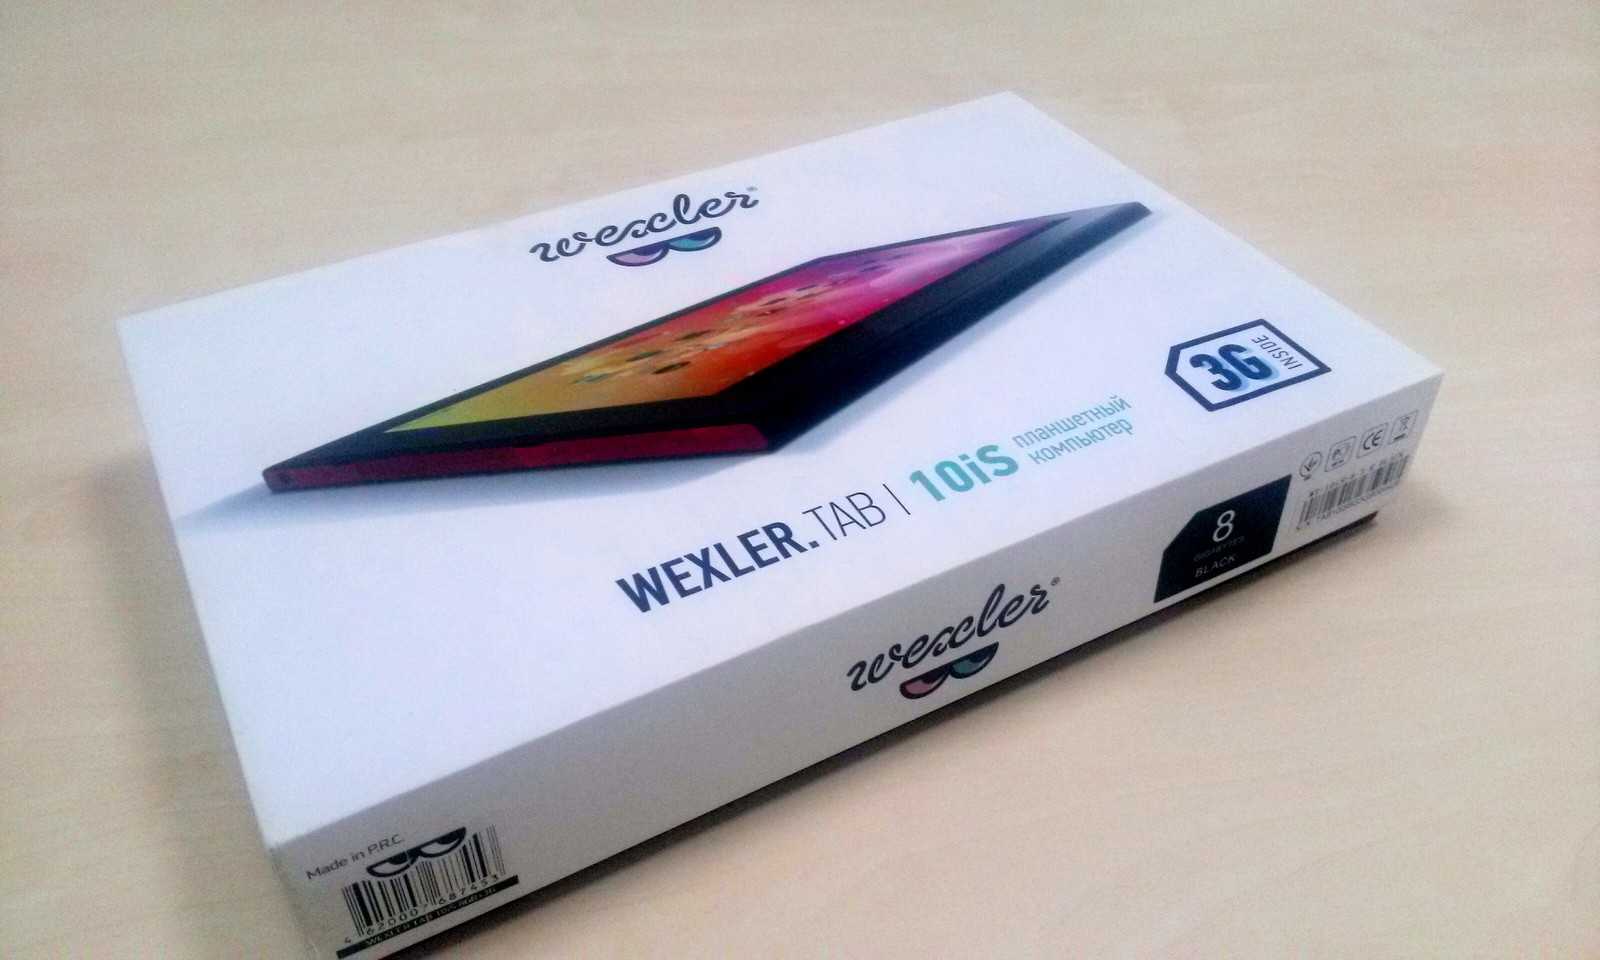 Замена экрана планшета wexler tab 10is — купить, цена и характеристики, отзывы